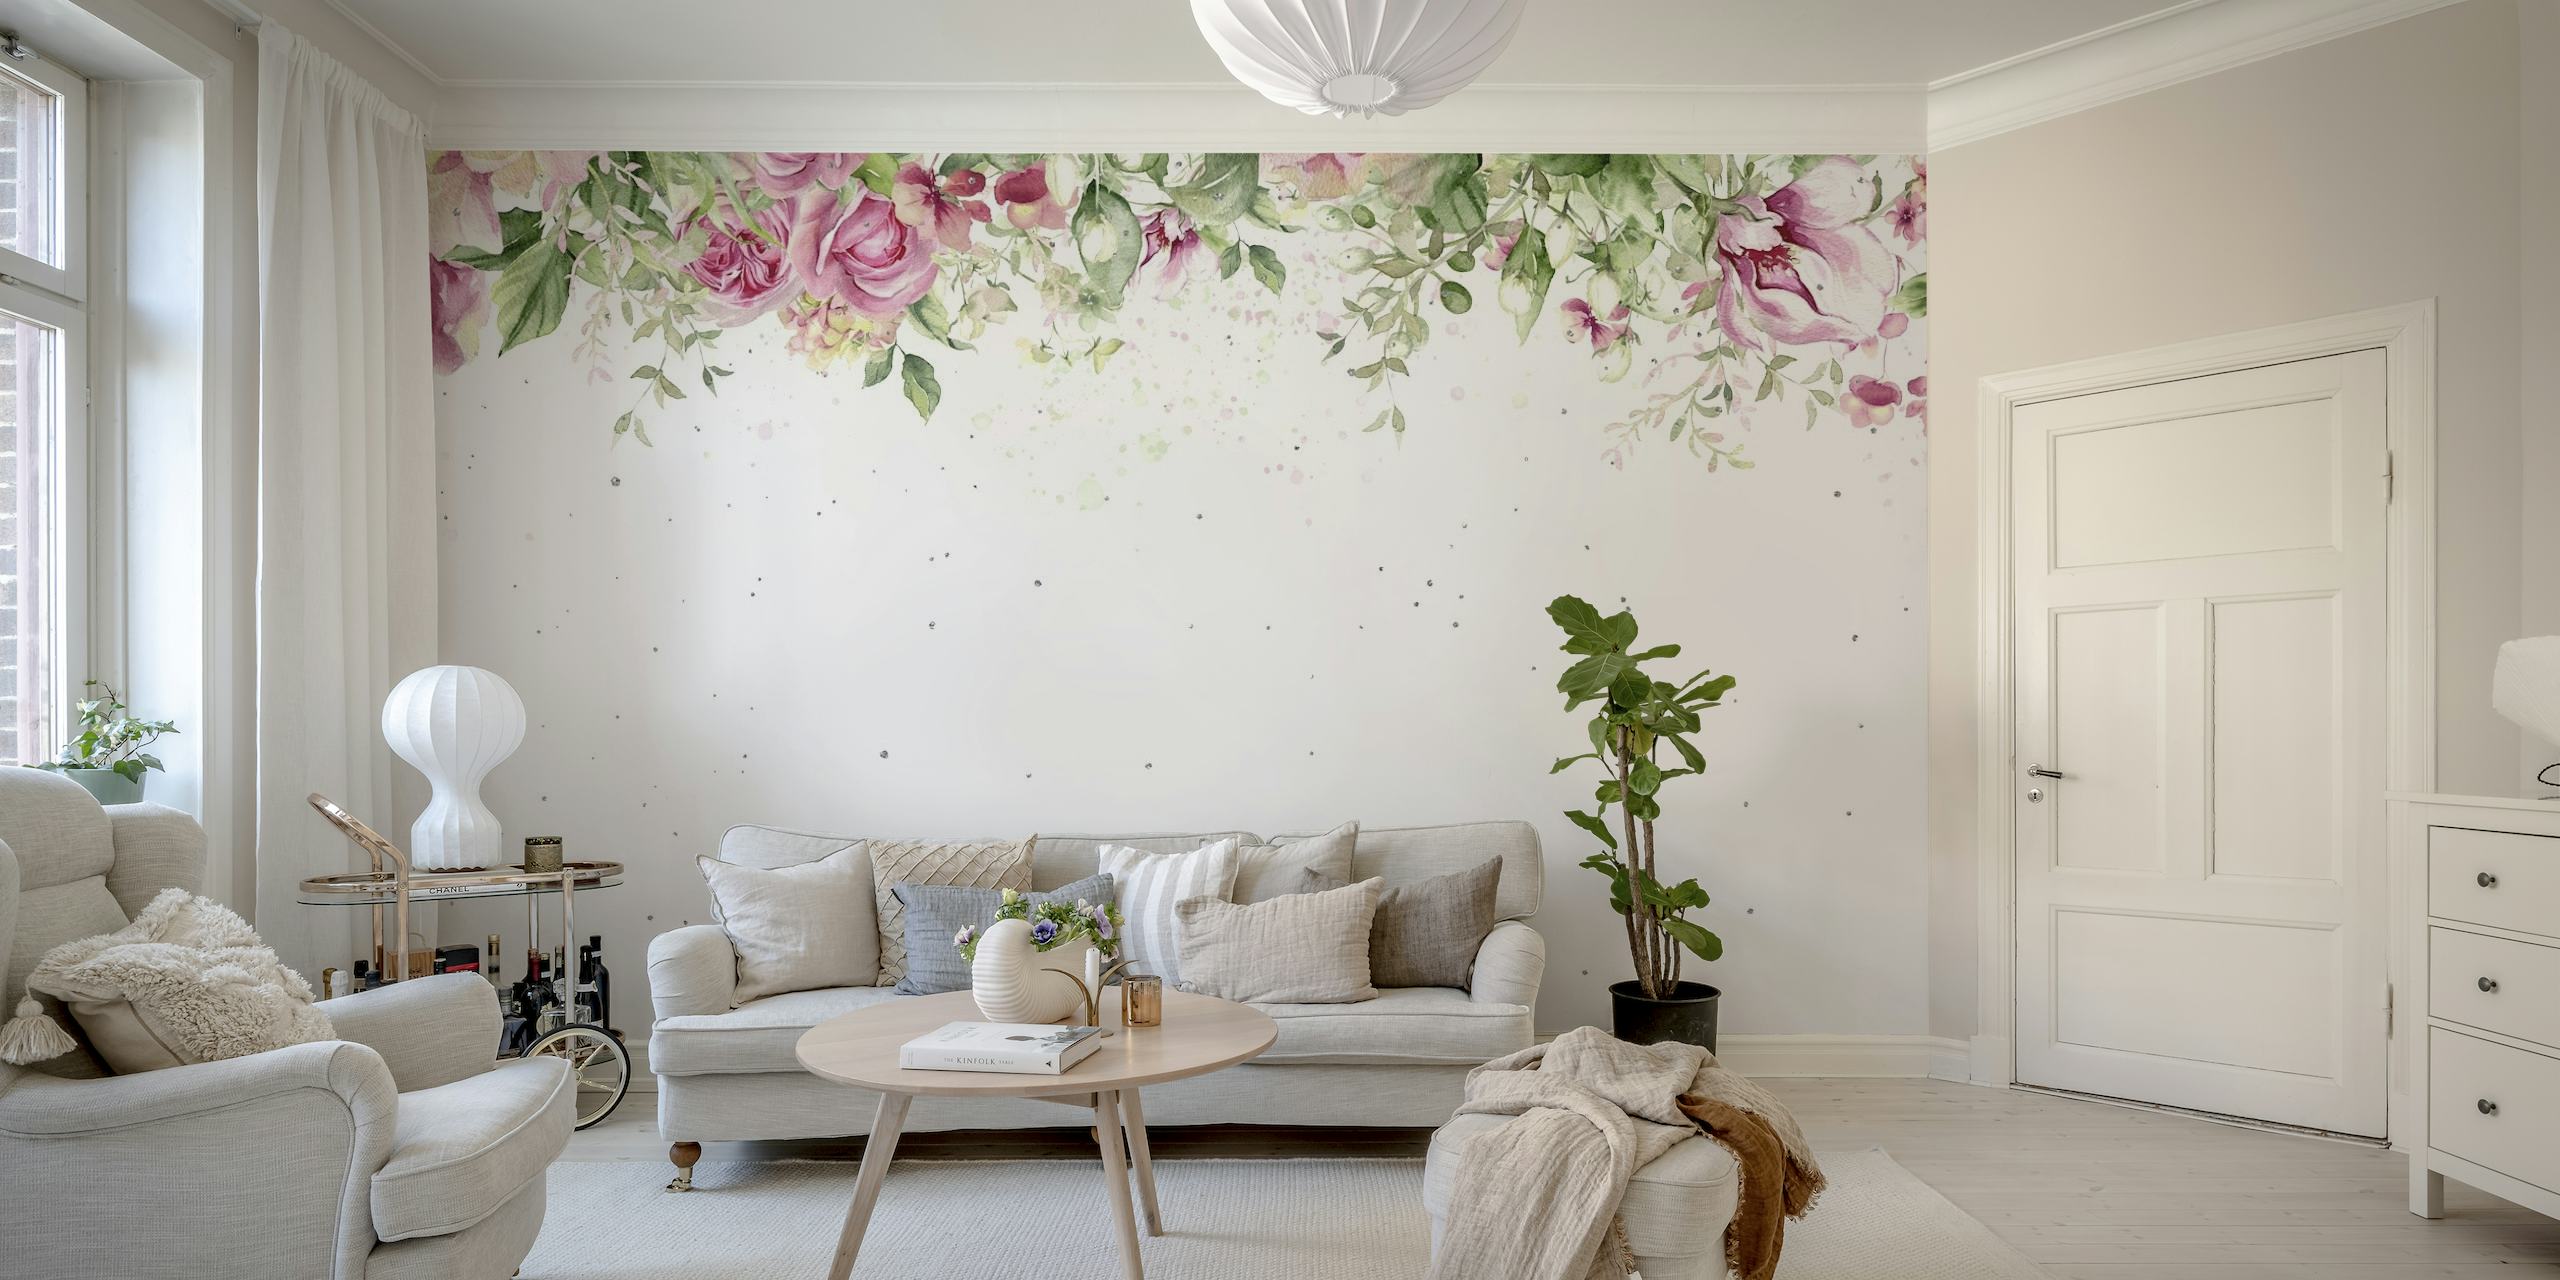 Elegante Rosen und Grünpflanzen in Aquarellfarben bilden eine ruhige obere Umrandung eines Wandbildes